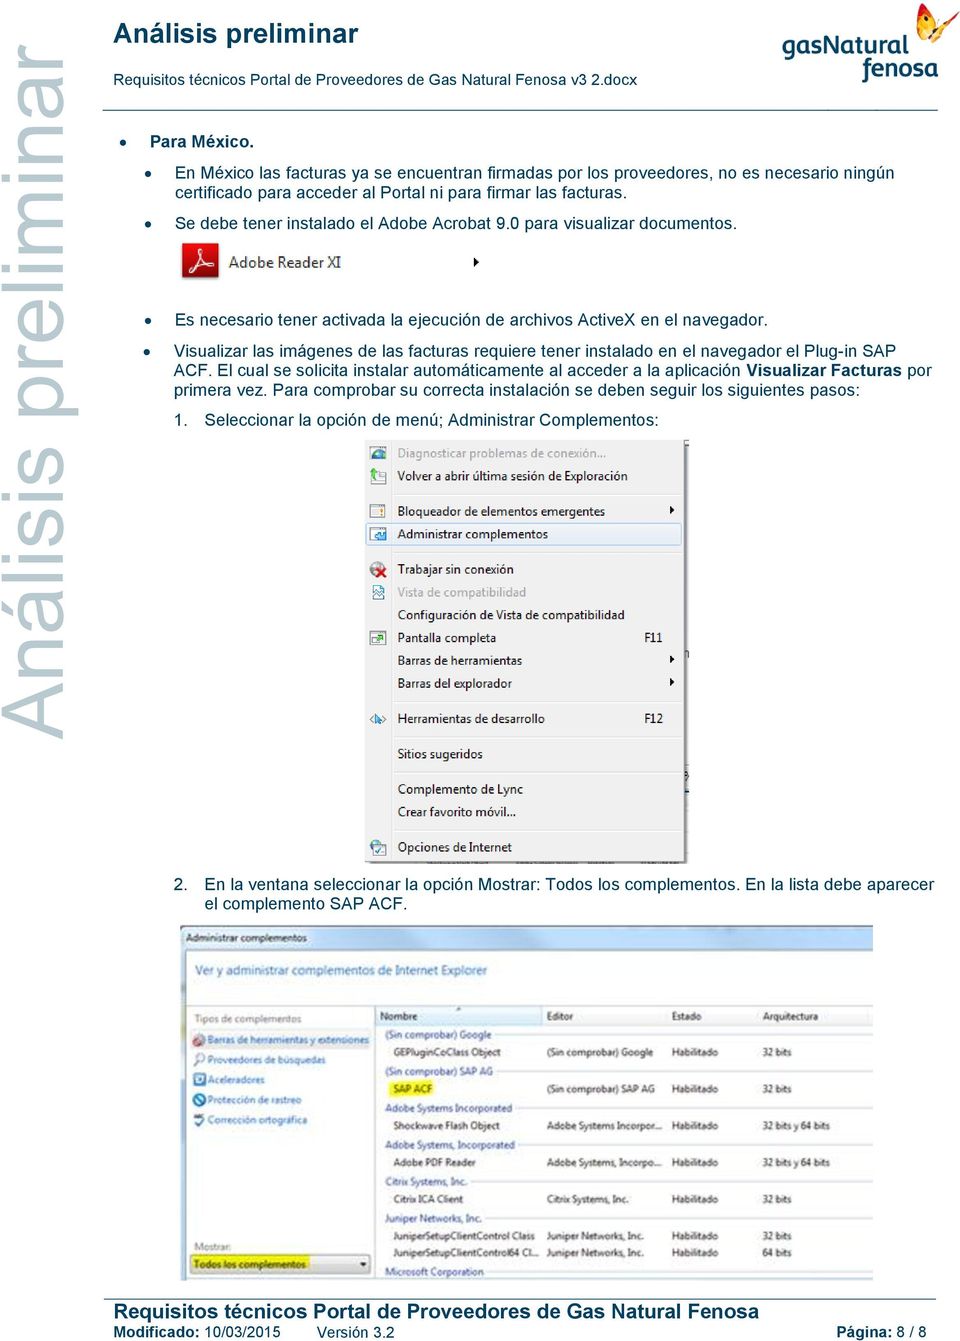 Visualizar las imágenes de las facturas requiere tener instalado en el navegador el Plug-in SAP ACF.